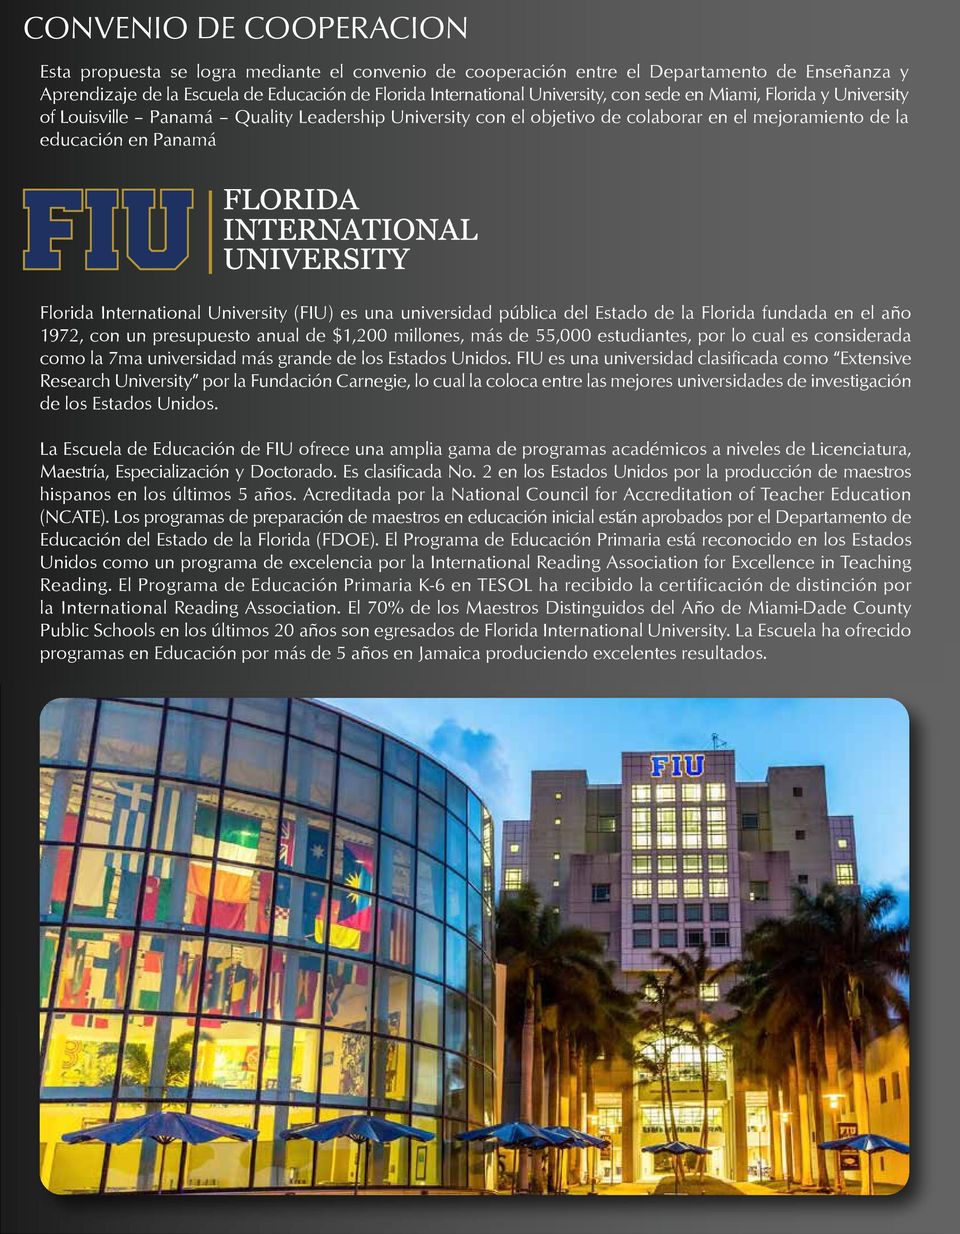 (FIU) es una universidad pública del Estado de la Florida fundada en el año 1972, con un presupuesto anual de $1,200 millones, más de 55,000 estudiantes, por lo cual es considerada como la 7ma